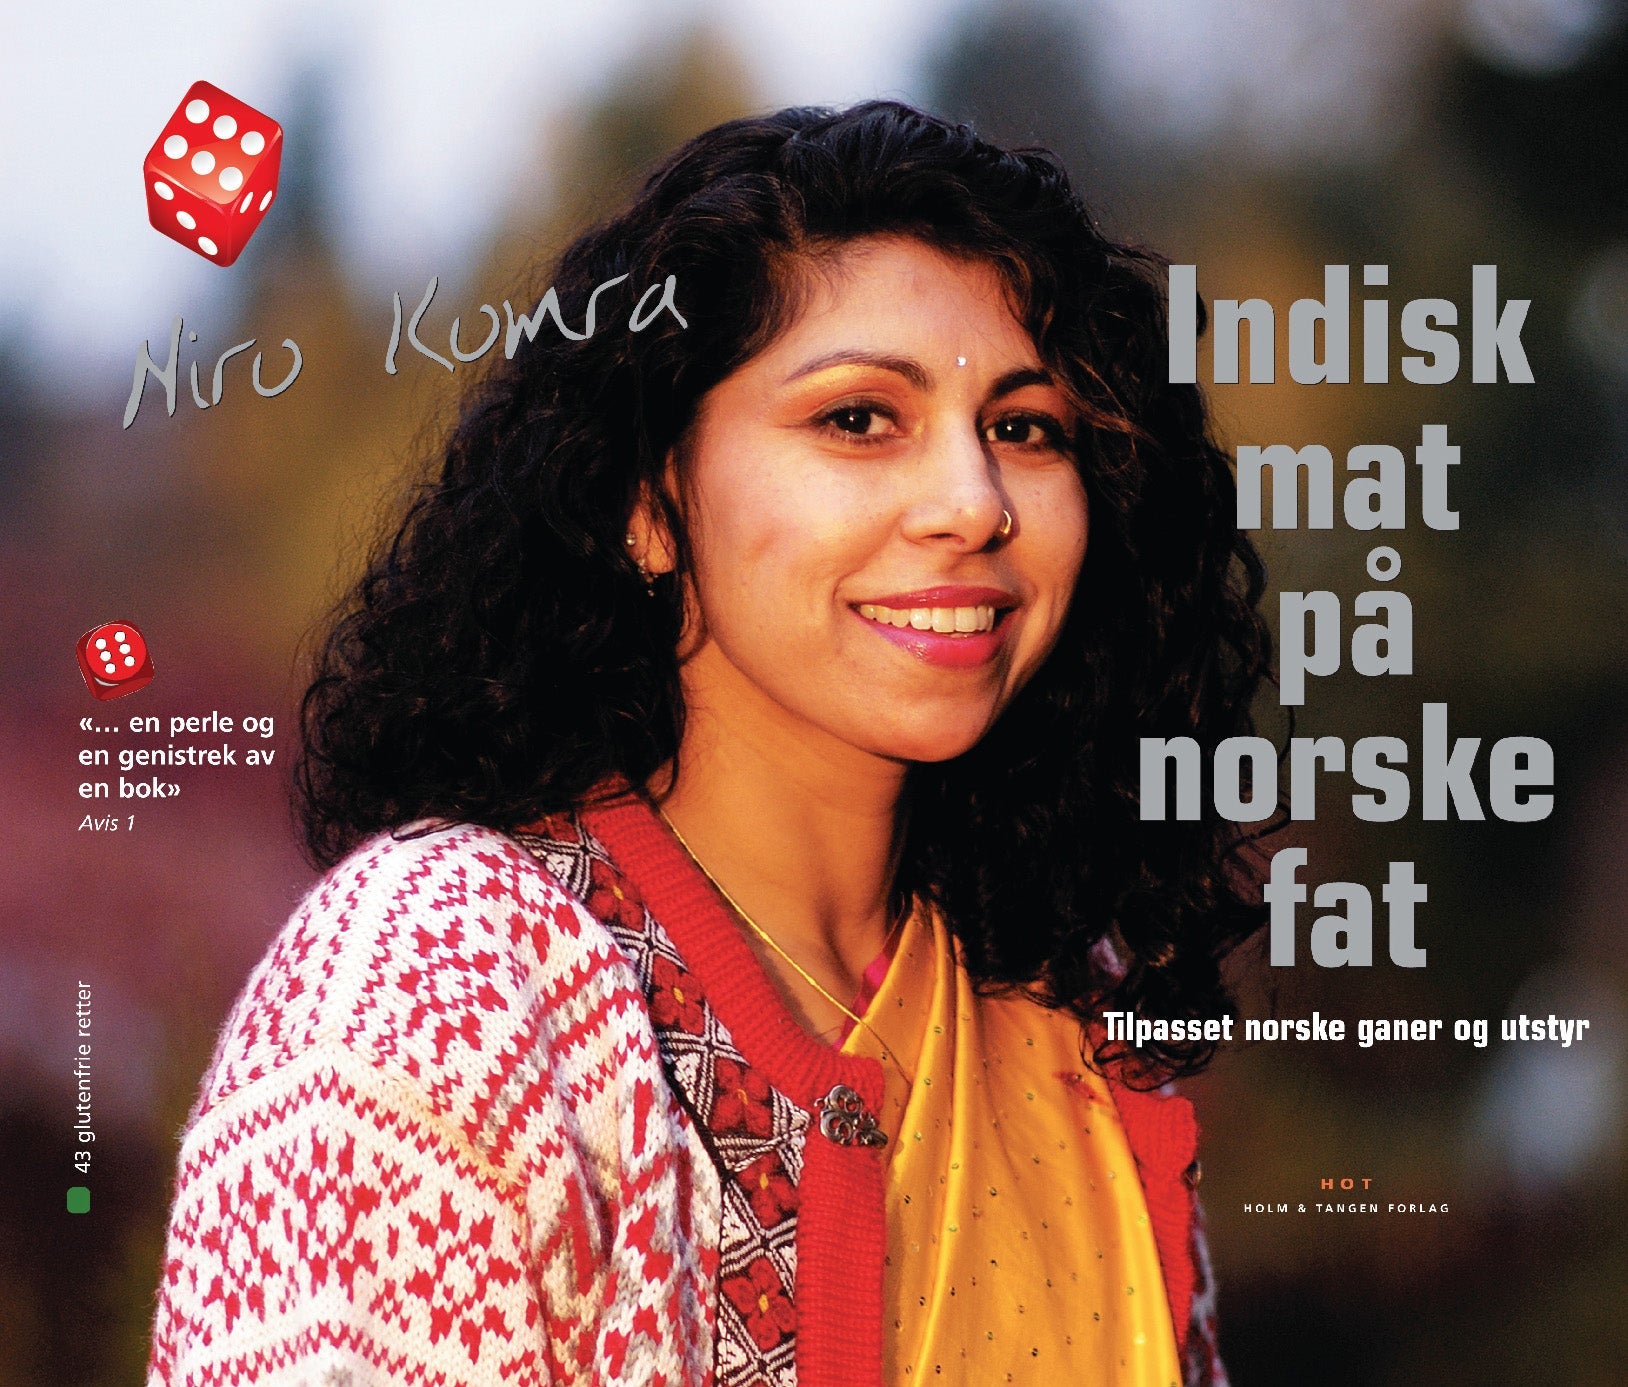 Indisk mat på norske fat